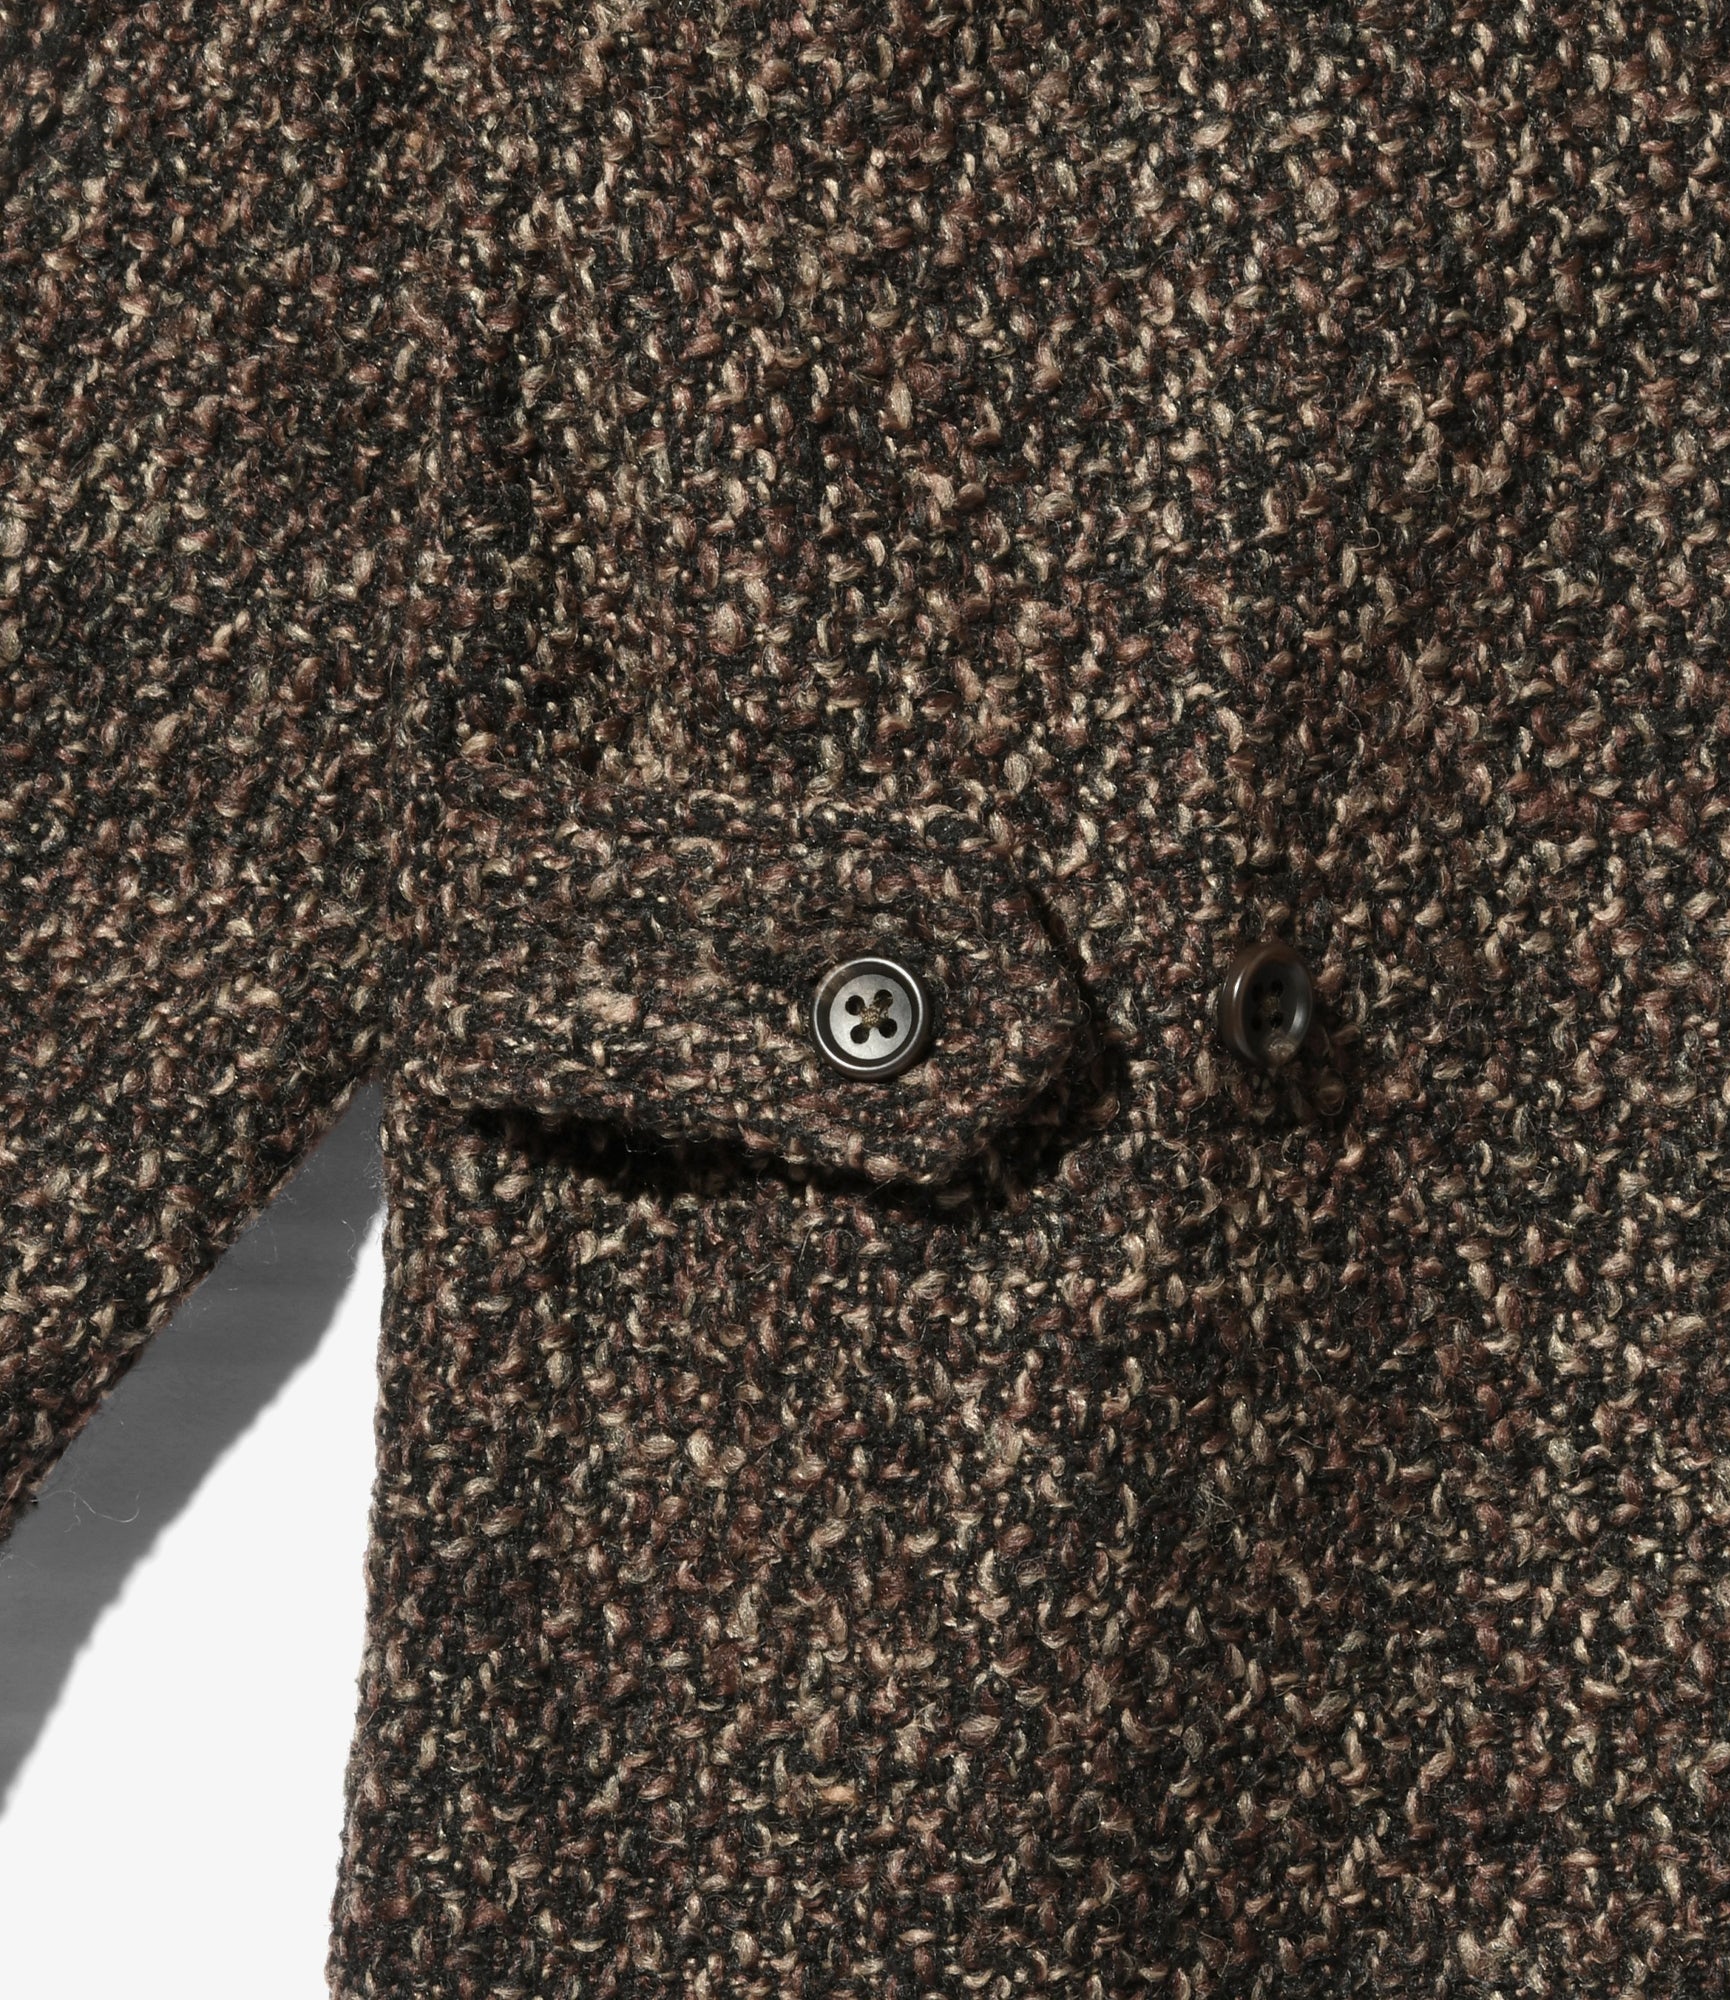 Engineered Garments Loiter Jacket - Dk Brown Polyester Wool - Tweed Boucle